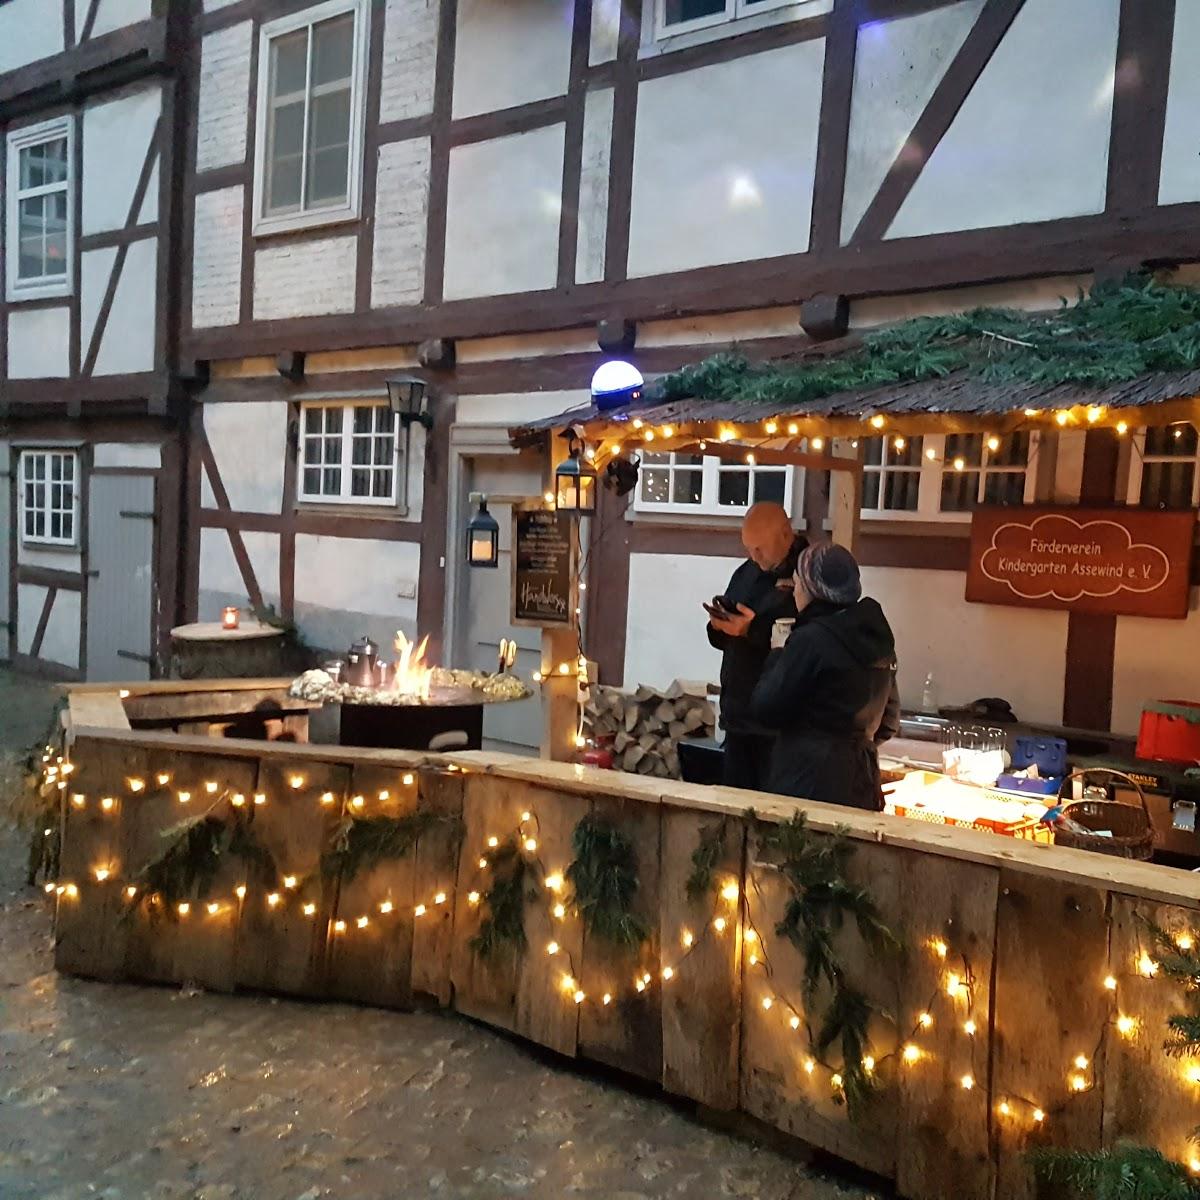 Restaurant "Klosterhof des er Weihnachtsmarkt" in Wolfenbüttel